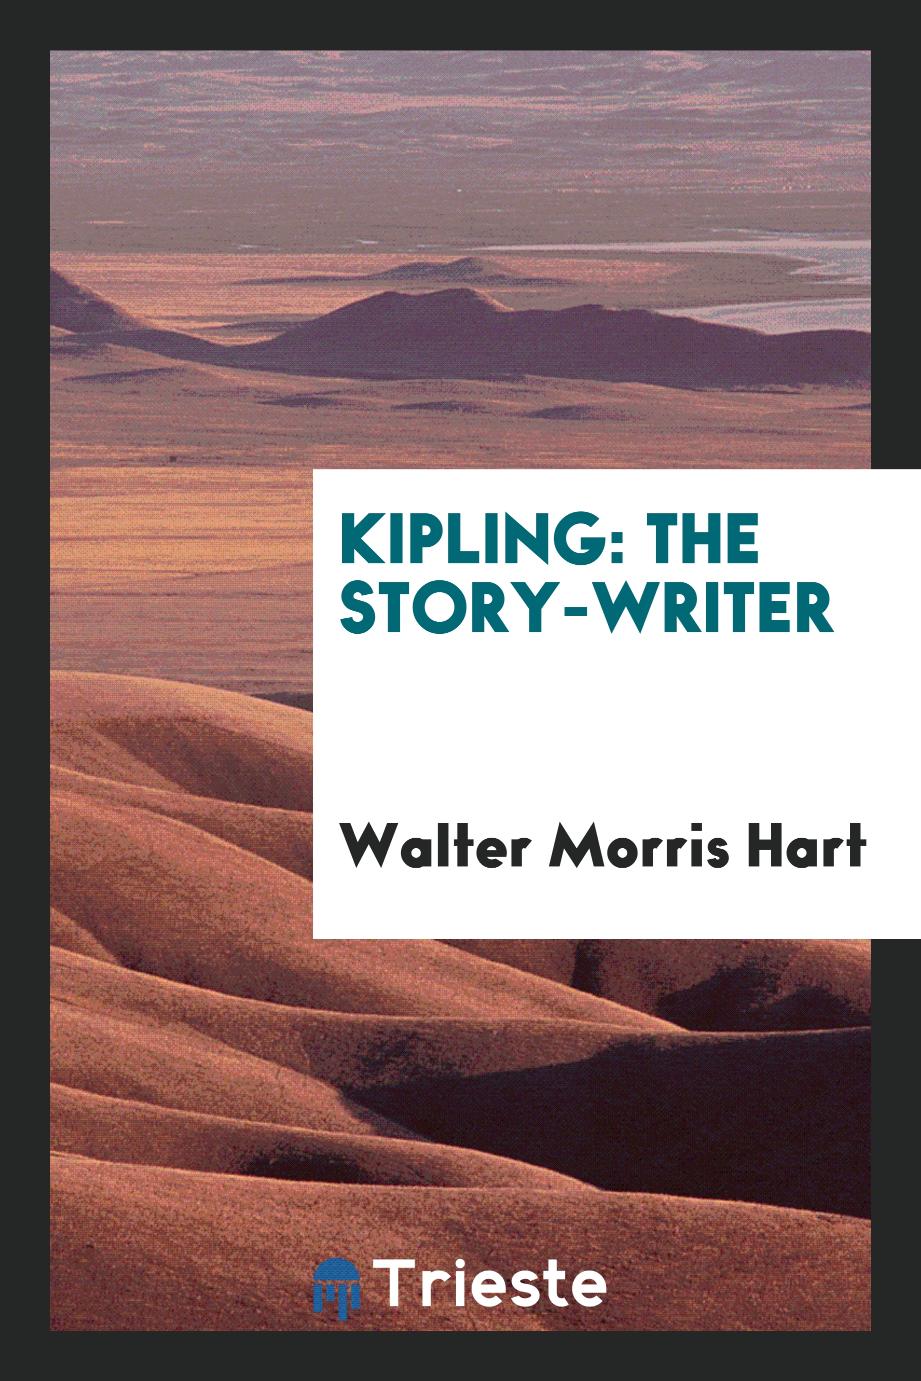 Kipling: The Story-Writer